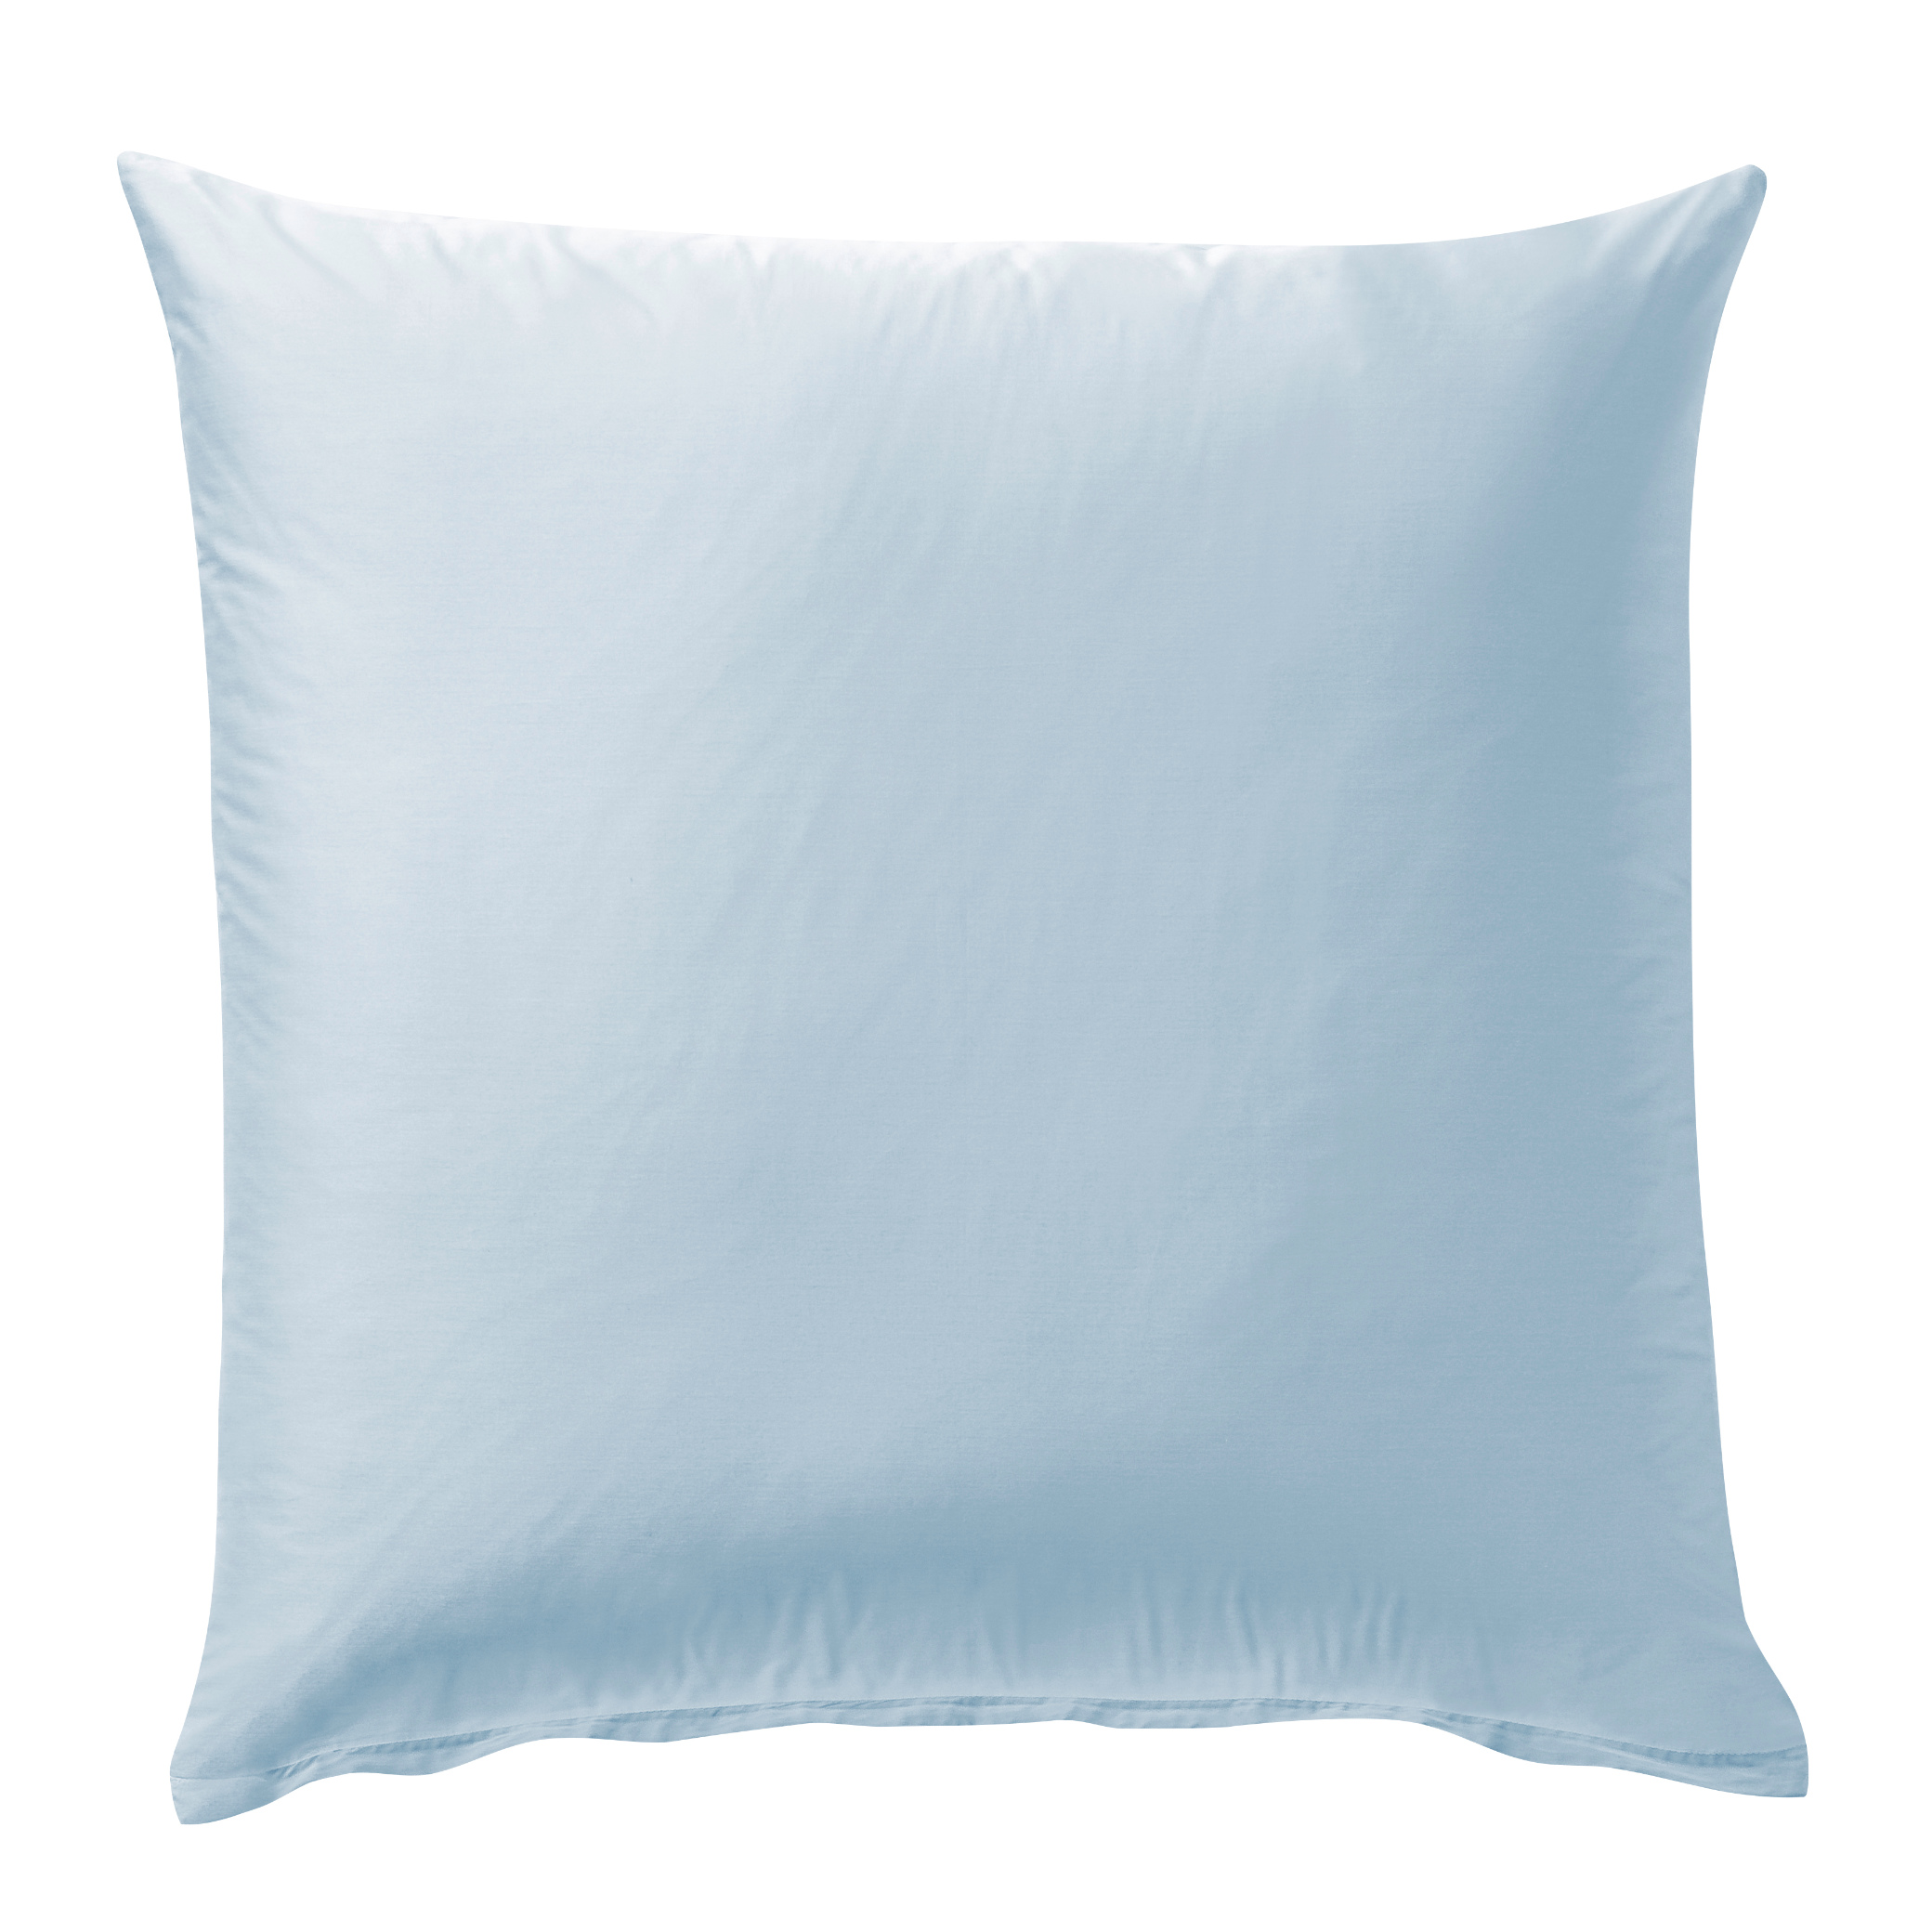 Bettwäsche-Set blau, 100% Baumwolle, 135x200cm